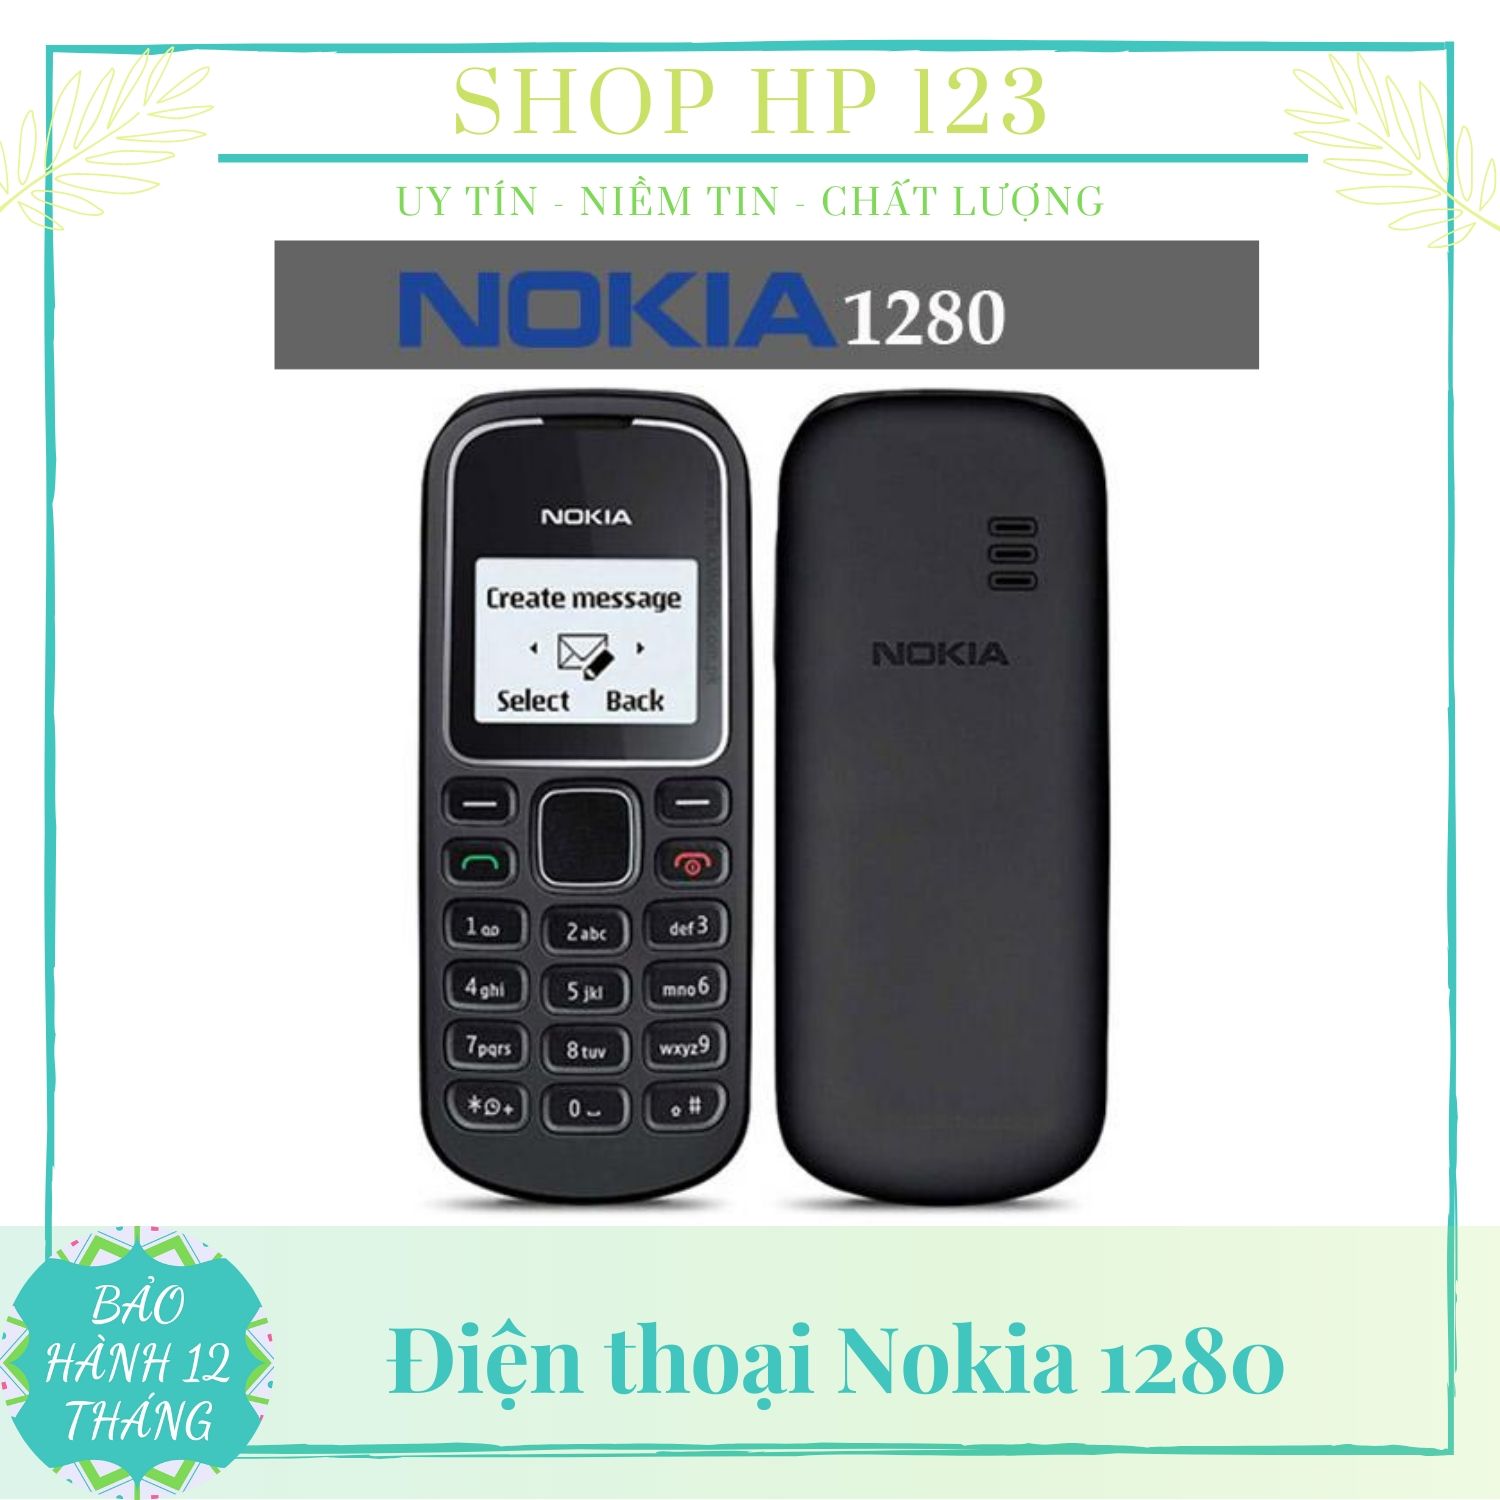 199+ Hình nền Nokia độc lạ, ấn tượng, chuẩn nhất hiện nay